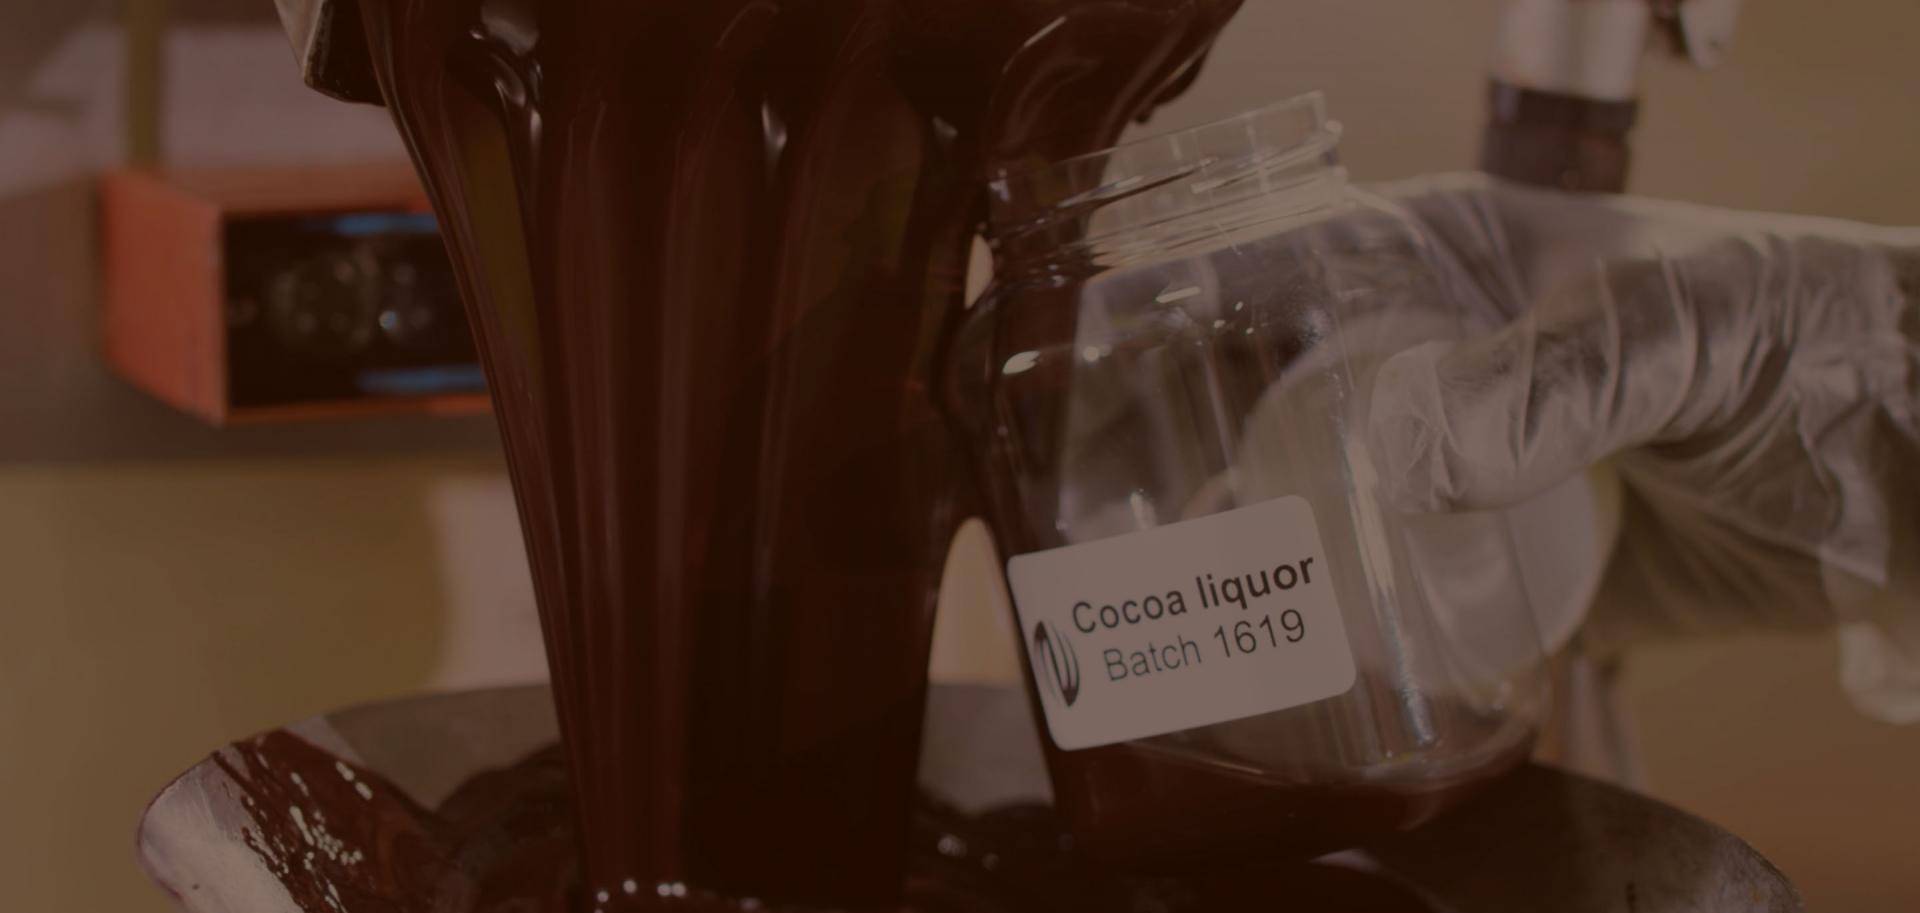 Cocoa liquor